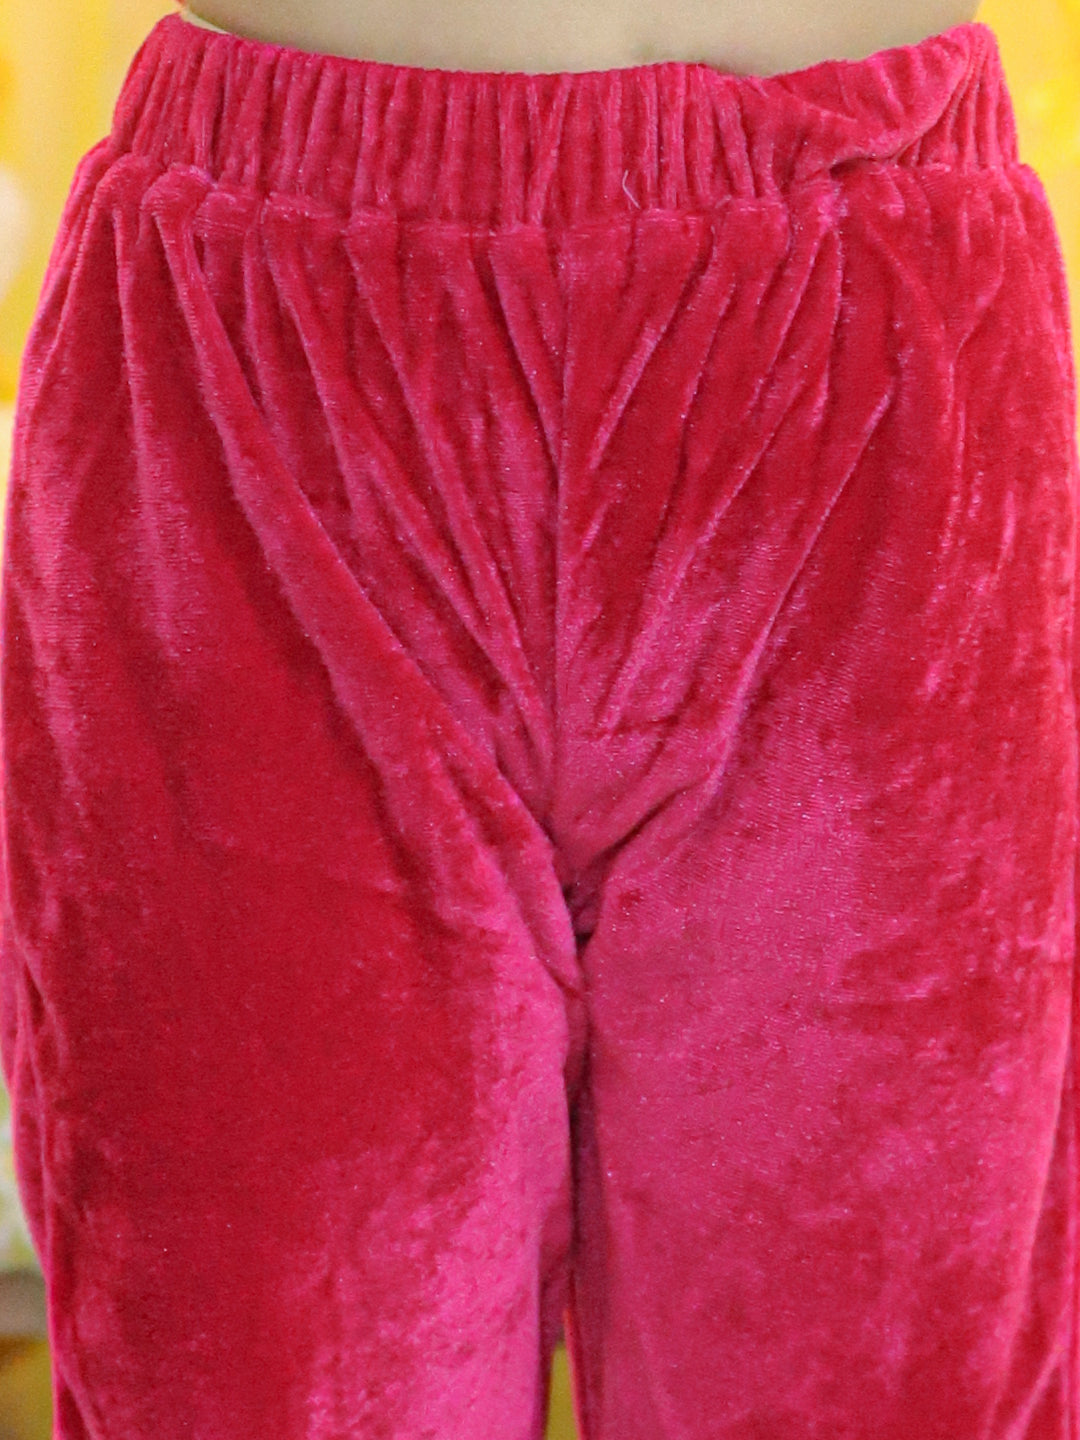 BownBee Velvet Frill Top Pant Full Sleeve Winter Set for Girls- Pink